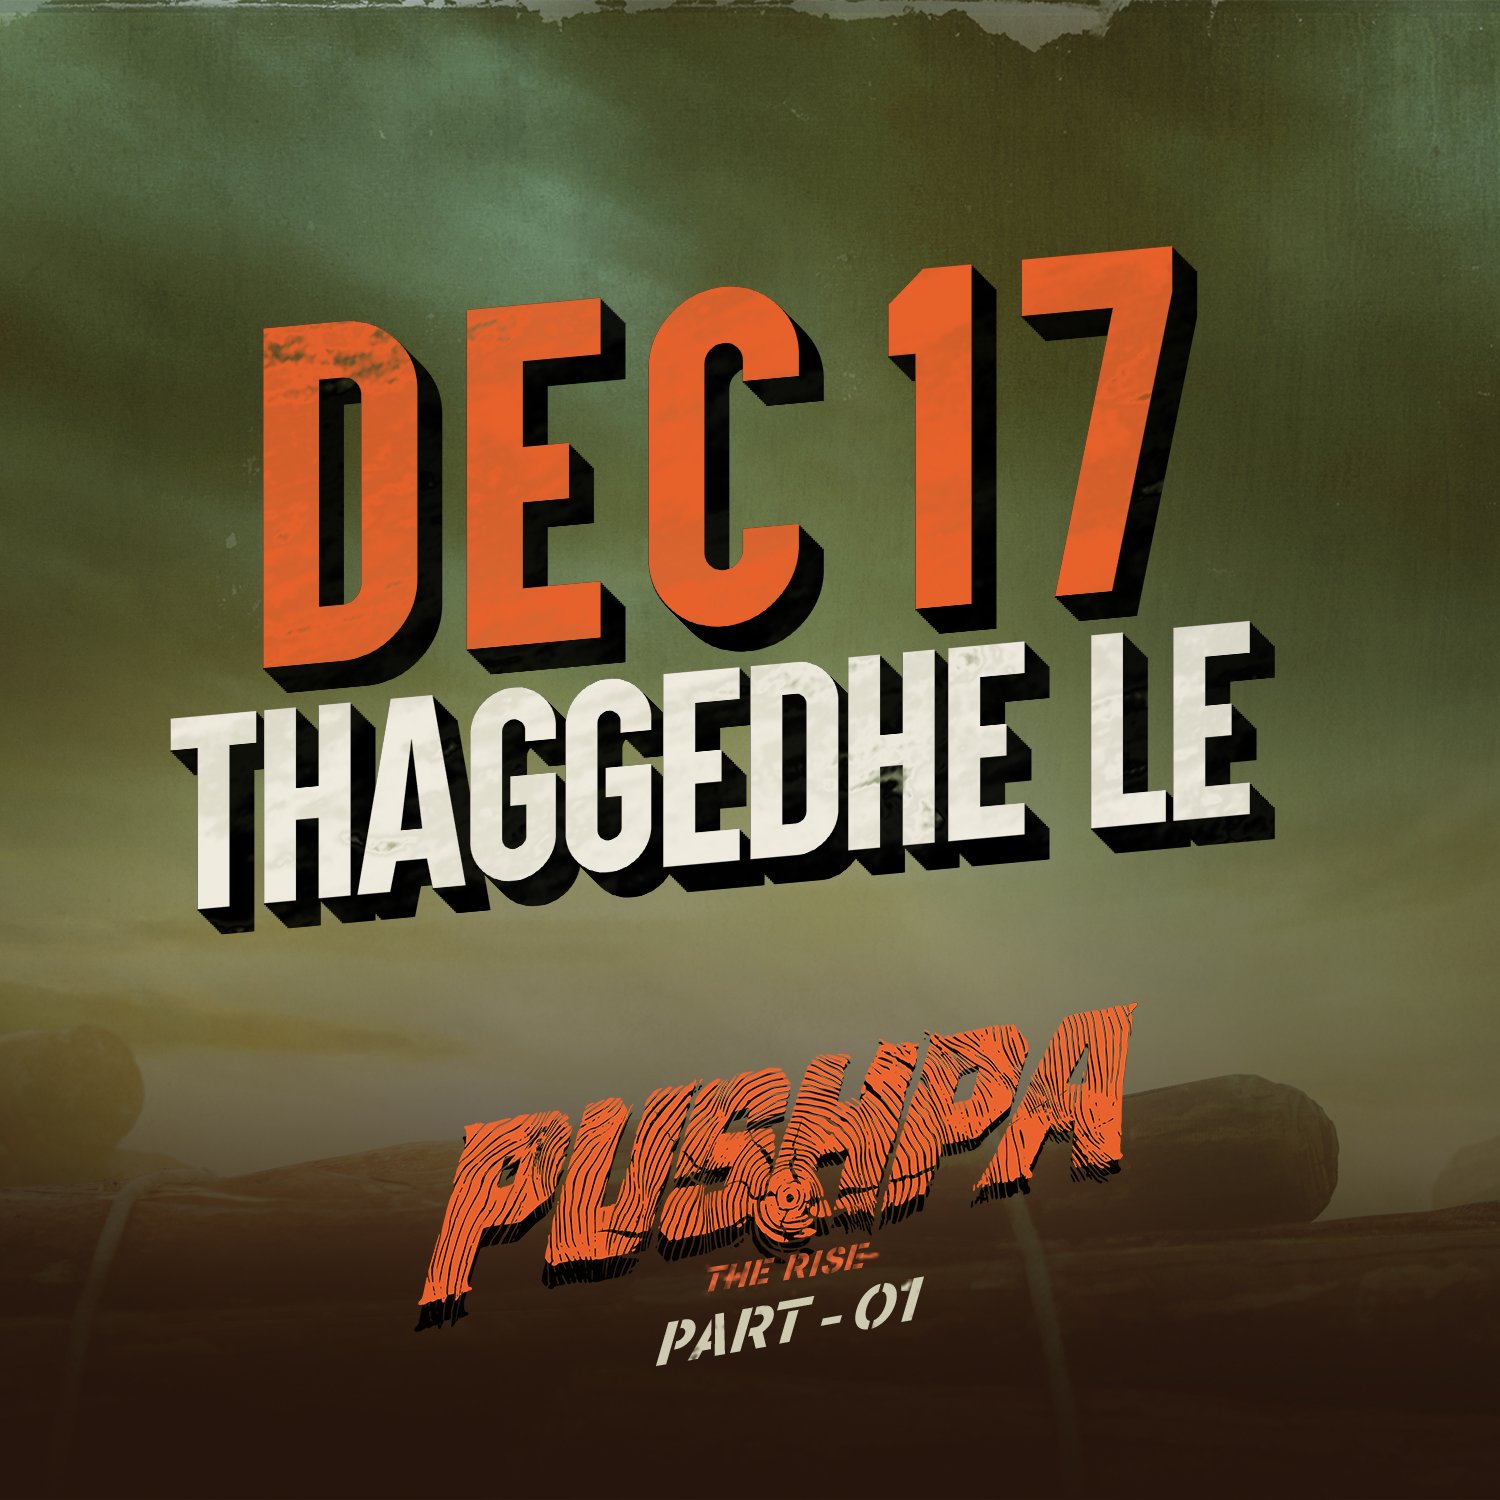 pushpa movie